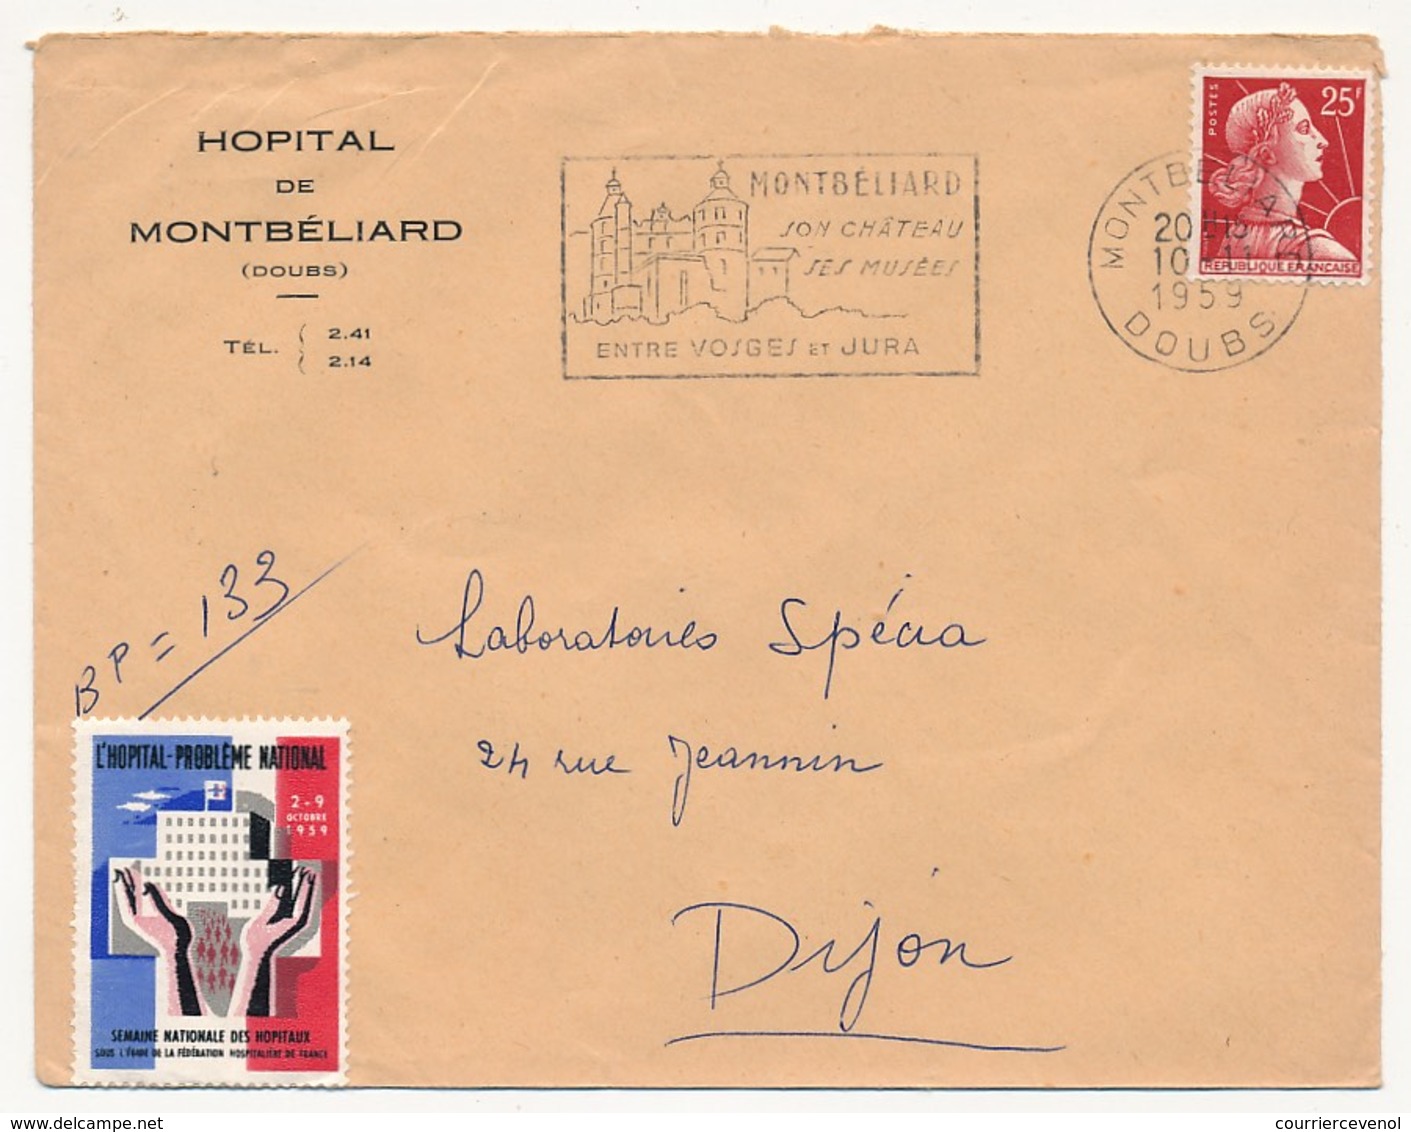 FRANCE - Enveloppe Affr 25F Muller Avec Vignette "L'Hopital Problème National" - Hopital De Montbéliard (Doubs) 1959 - Lettere